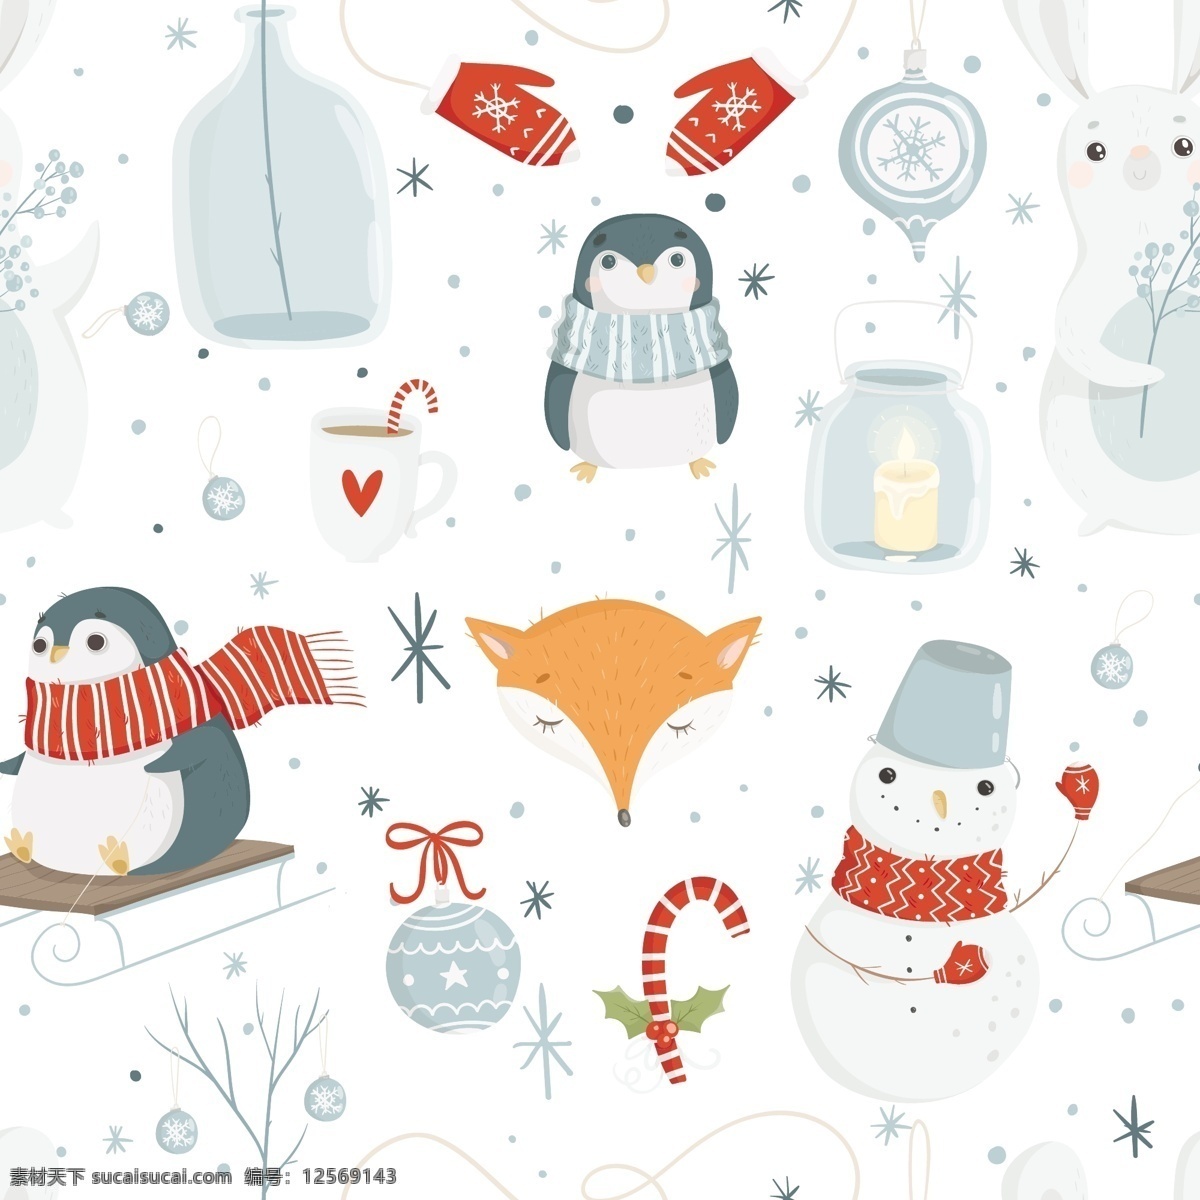 缤纷 圣诞节 冬天 背景 矢量 冬季 冬日 节日 平面素材 企鹅 设计素材 矢量素材 手套 温暖 温馨 雪人